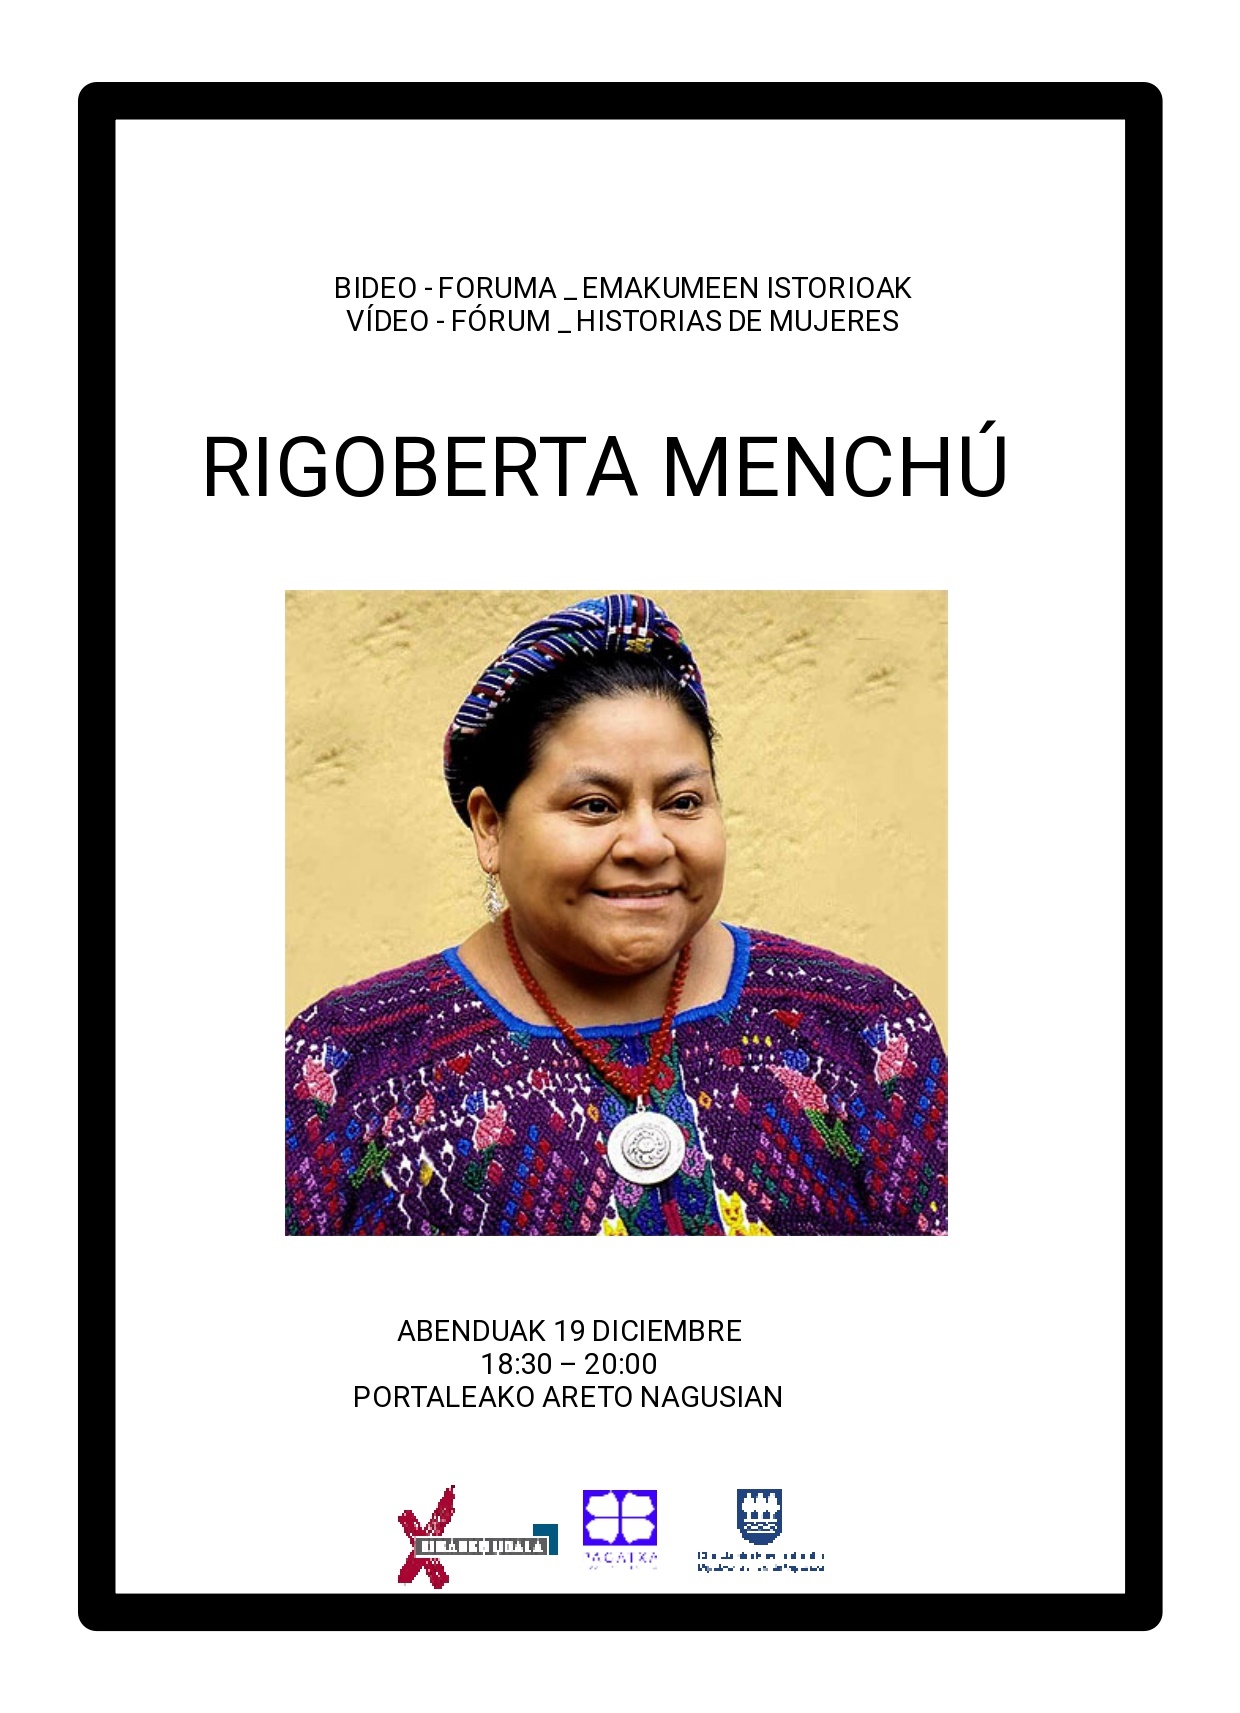 Video Forum de historias de mujeres: Rigoberta Menchú